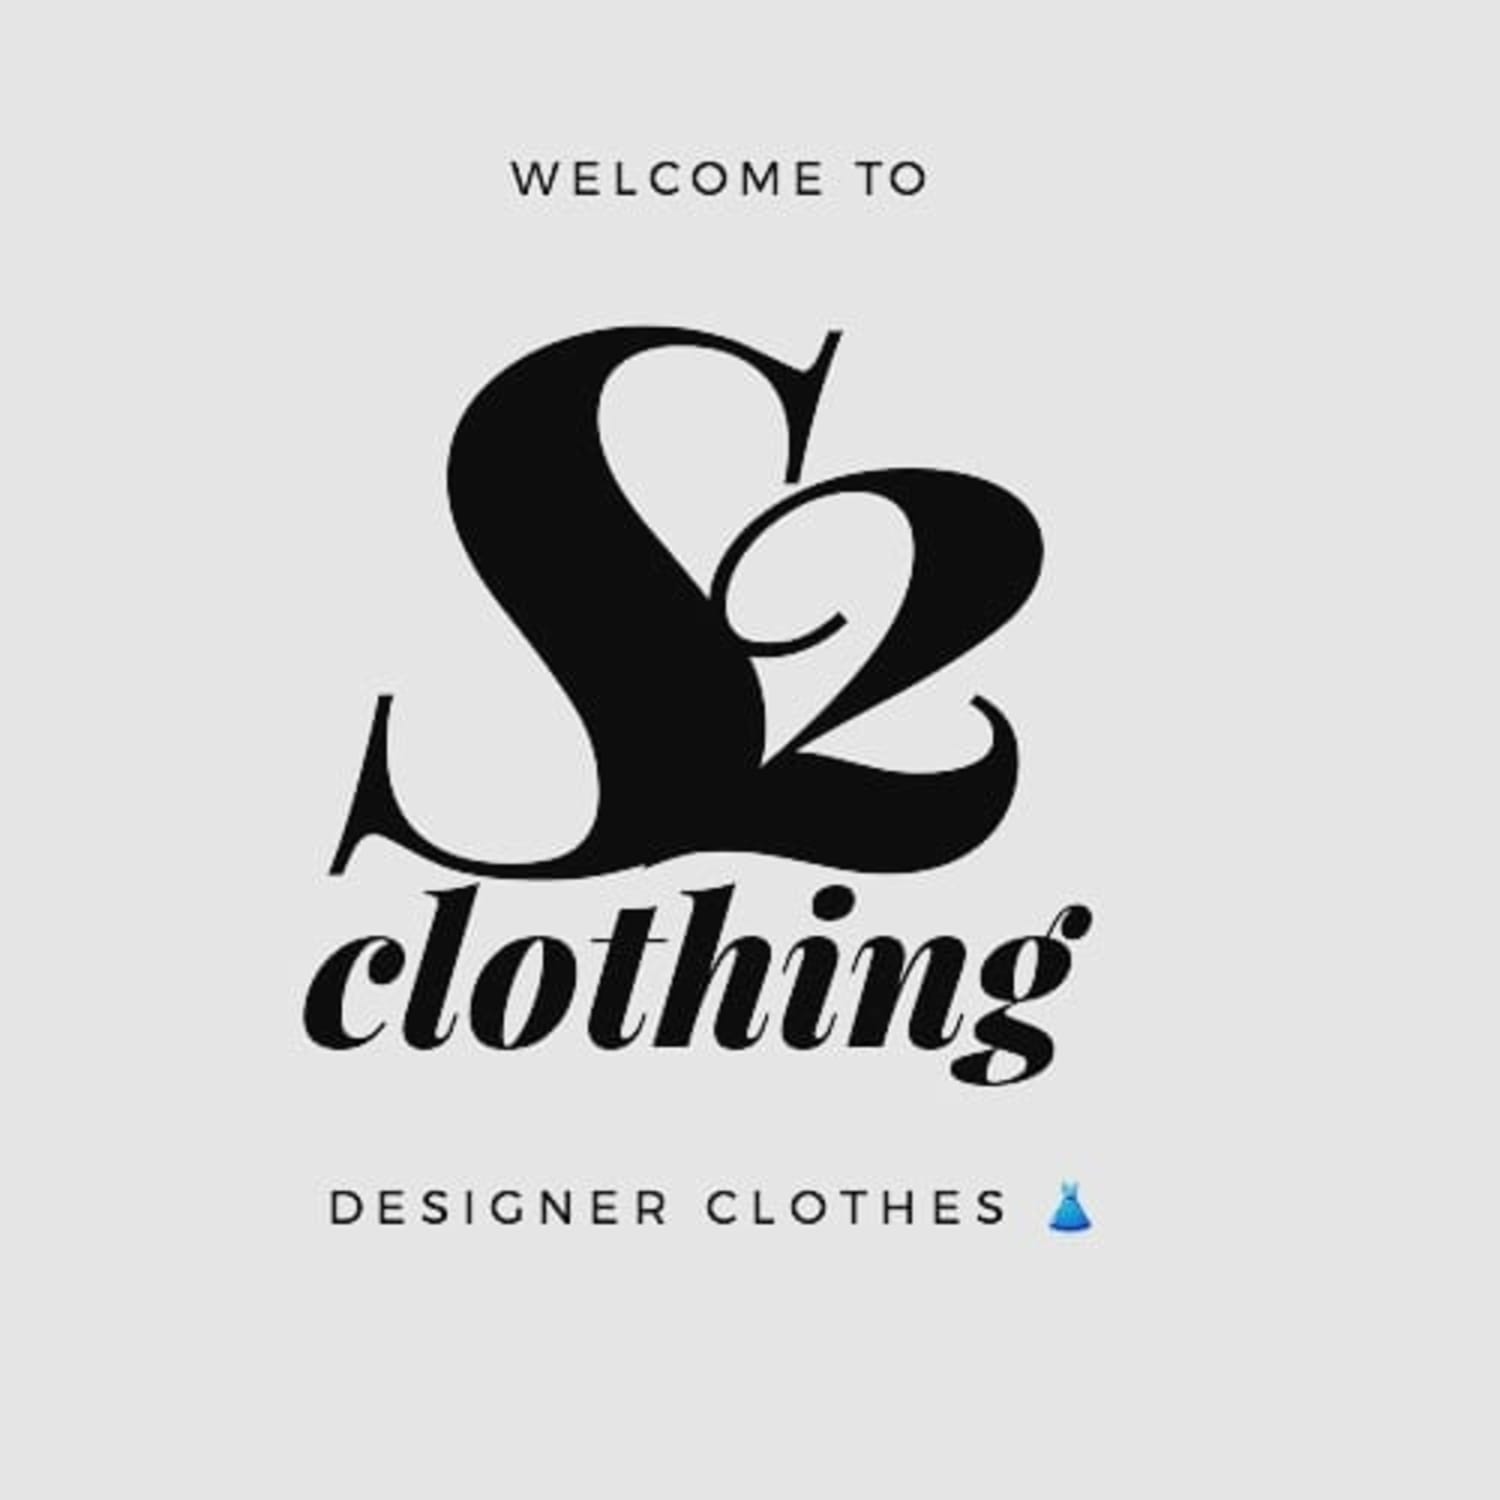 S2 Clothing